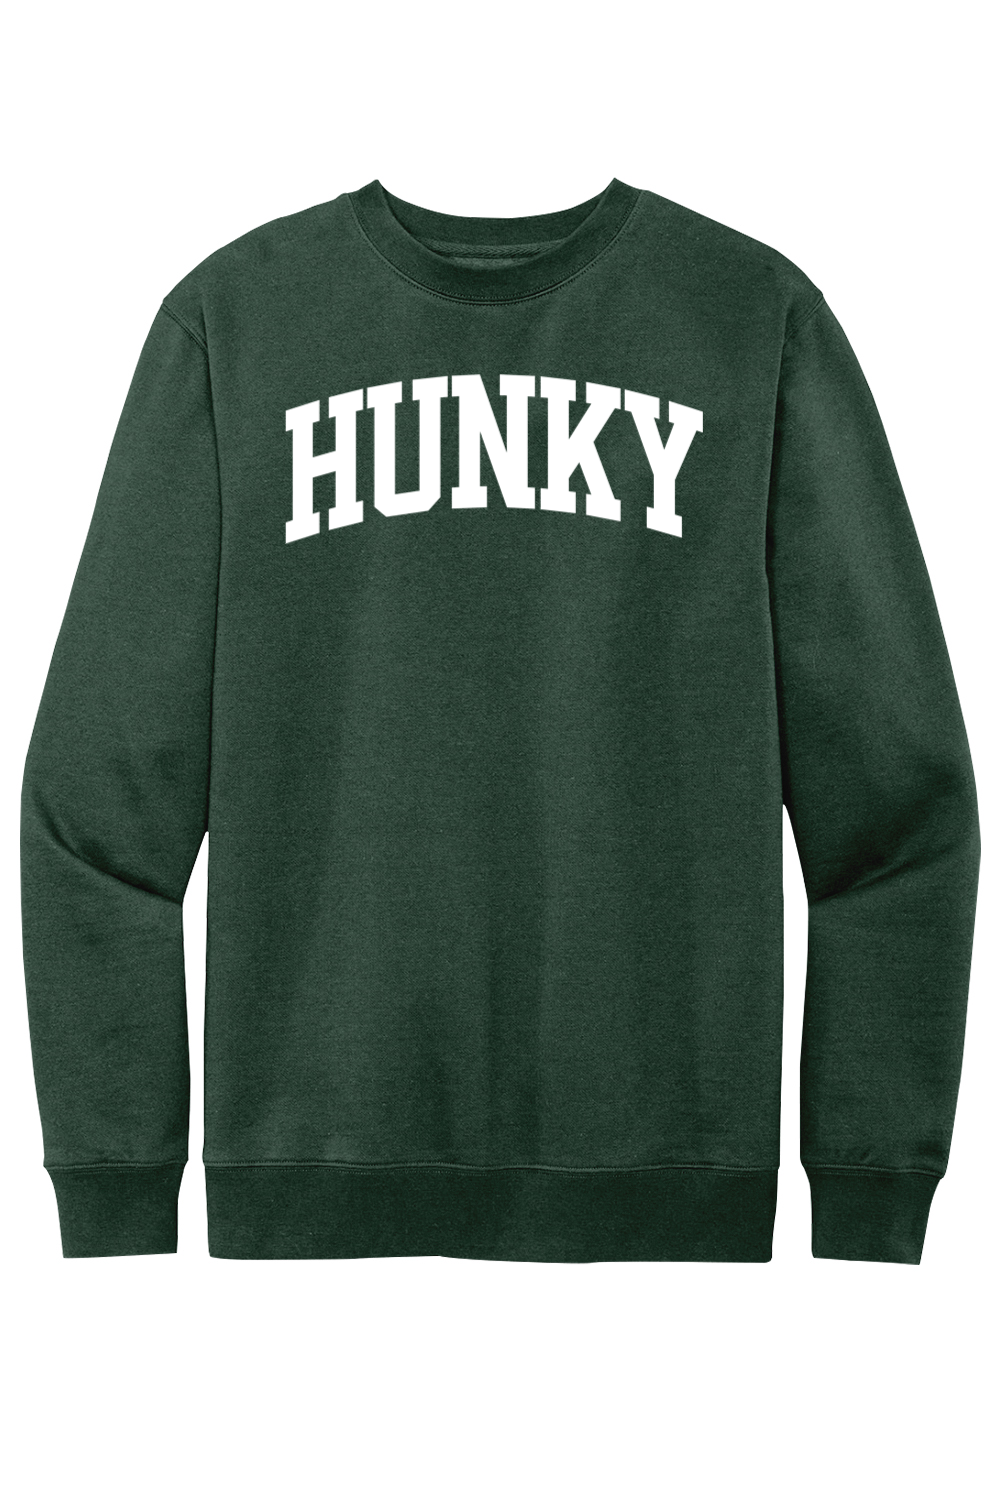 Hunky Collegiate - Fleece Crewneck Sweatshirt - Yinzylvania